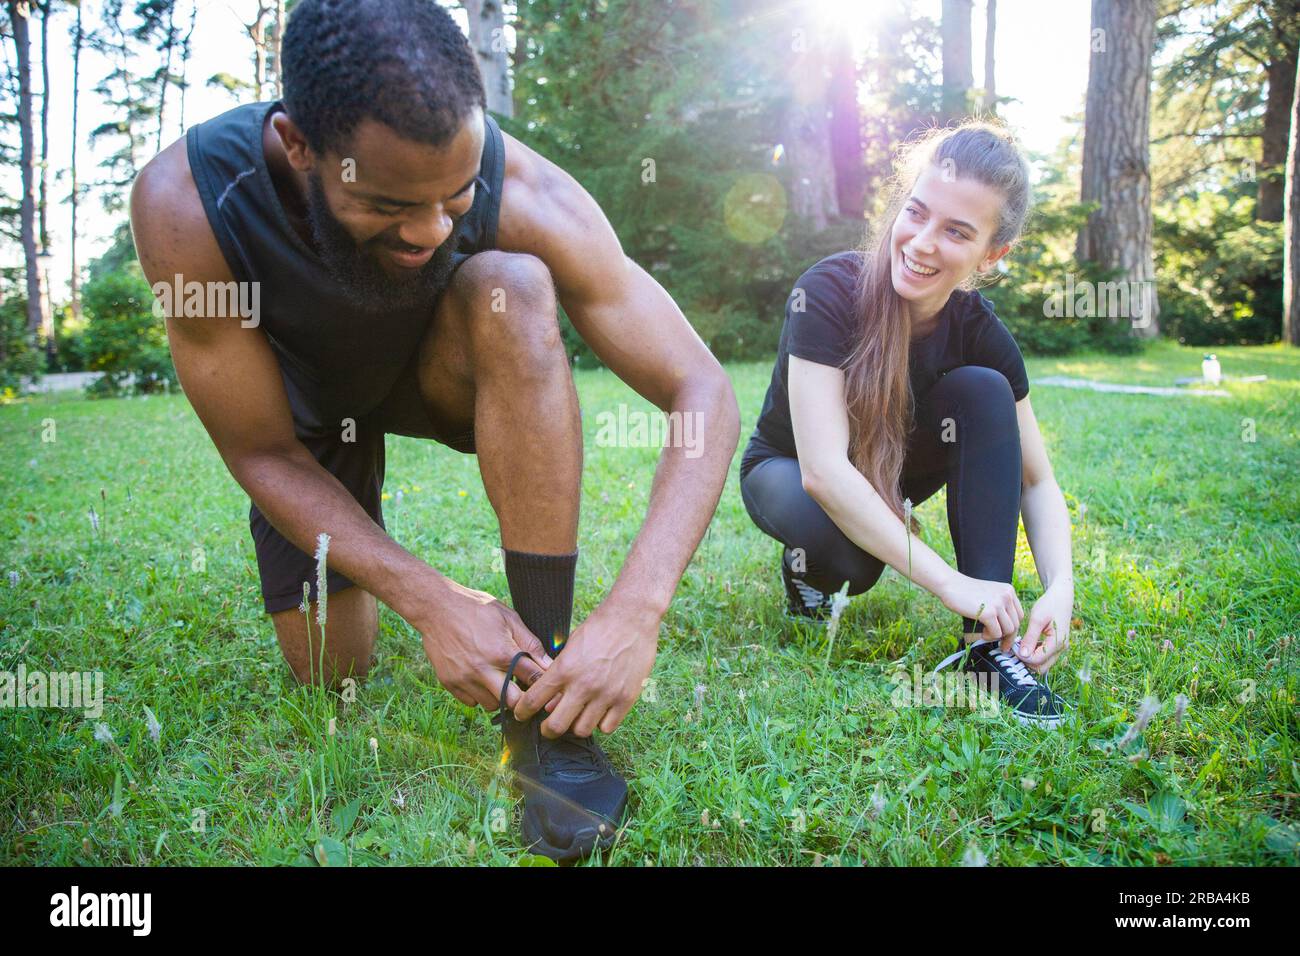 Zwei Sportler binden ihre Schuhe beim Workout in einem Park zusammen Stockfoto